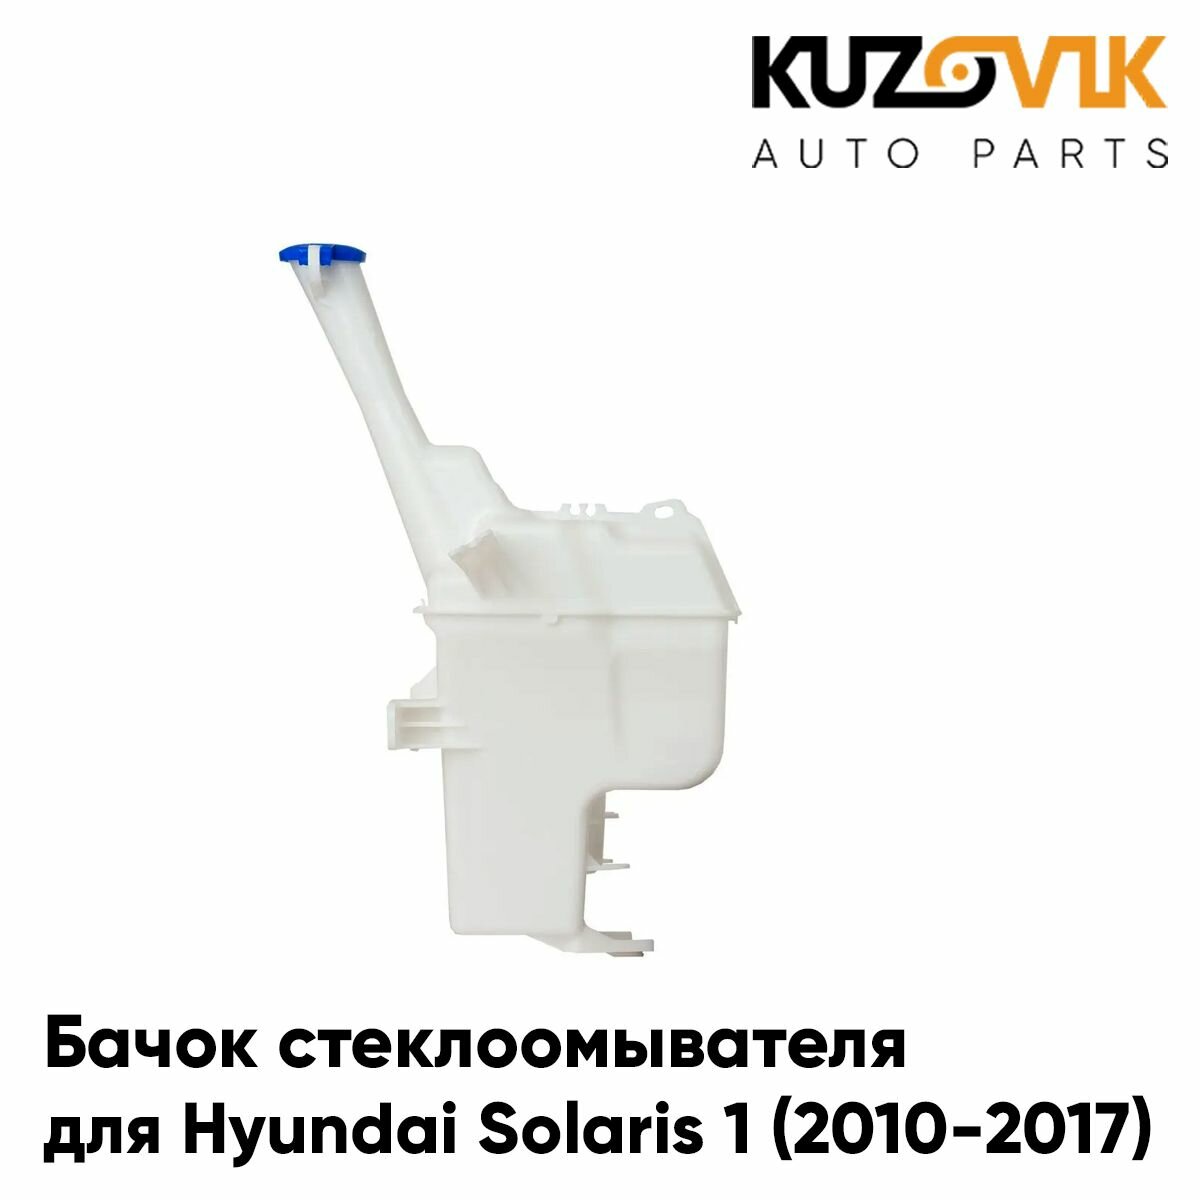 Бачок стеклоомывателя для Хендай Солярис Hyundai Solaris 1 (2010-2017) под датчик уровня жидкости